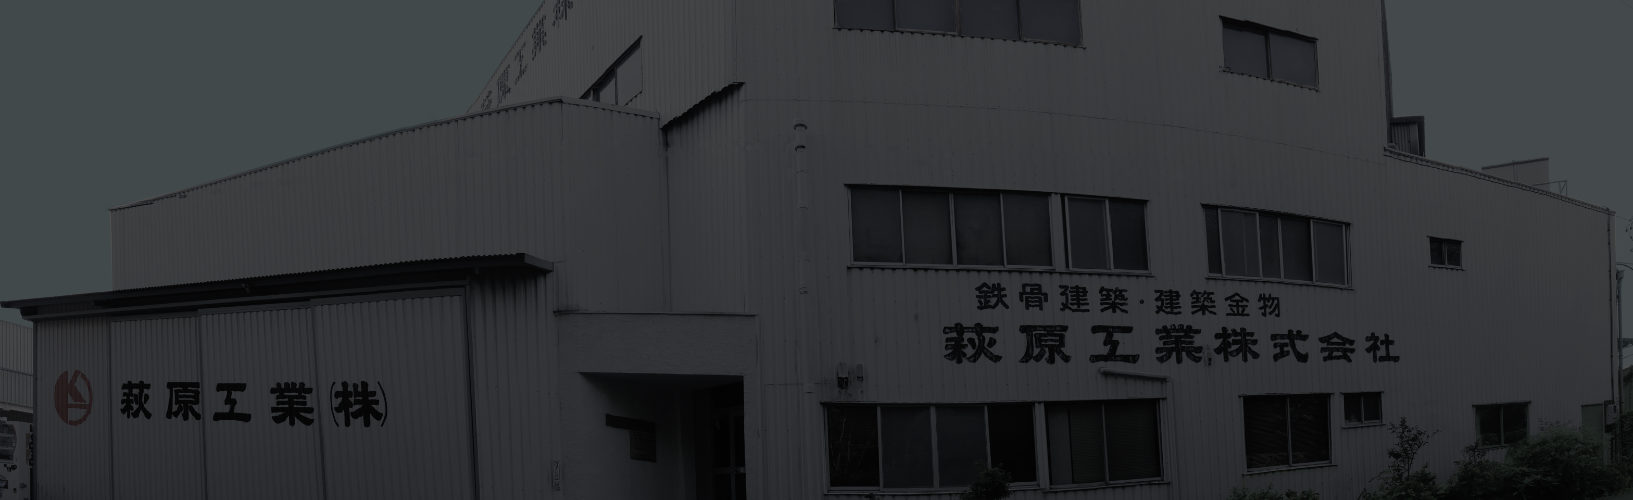 萩原工業株式会社の画像